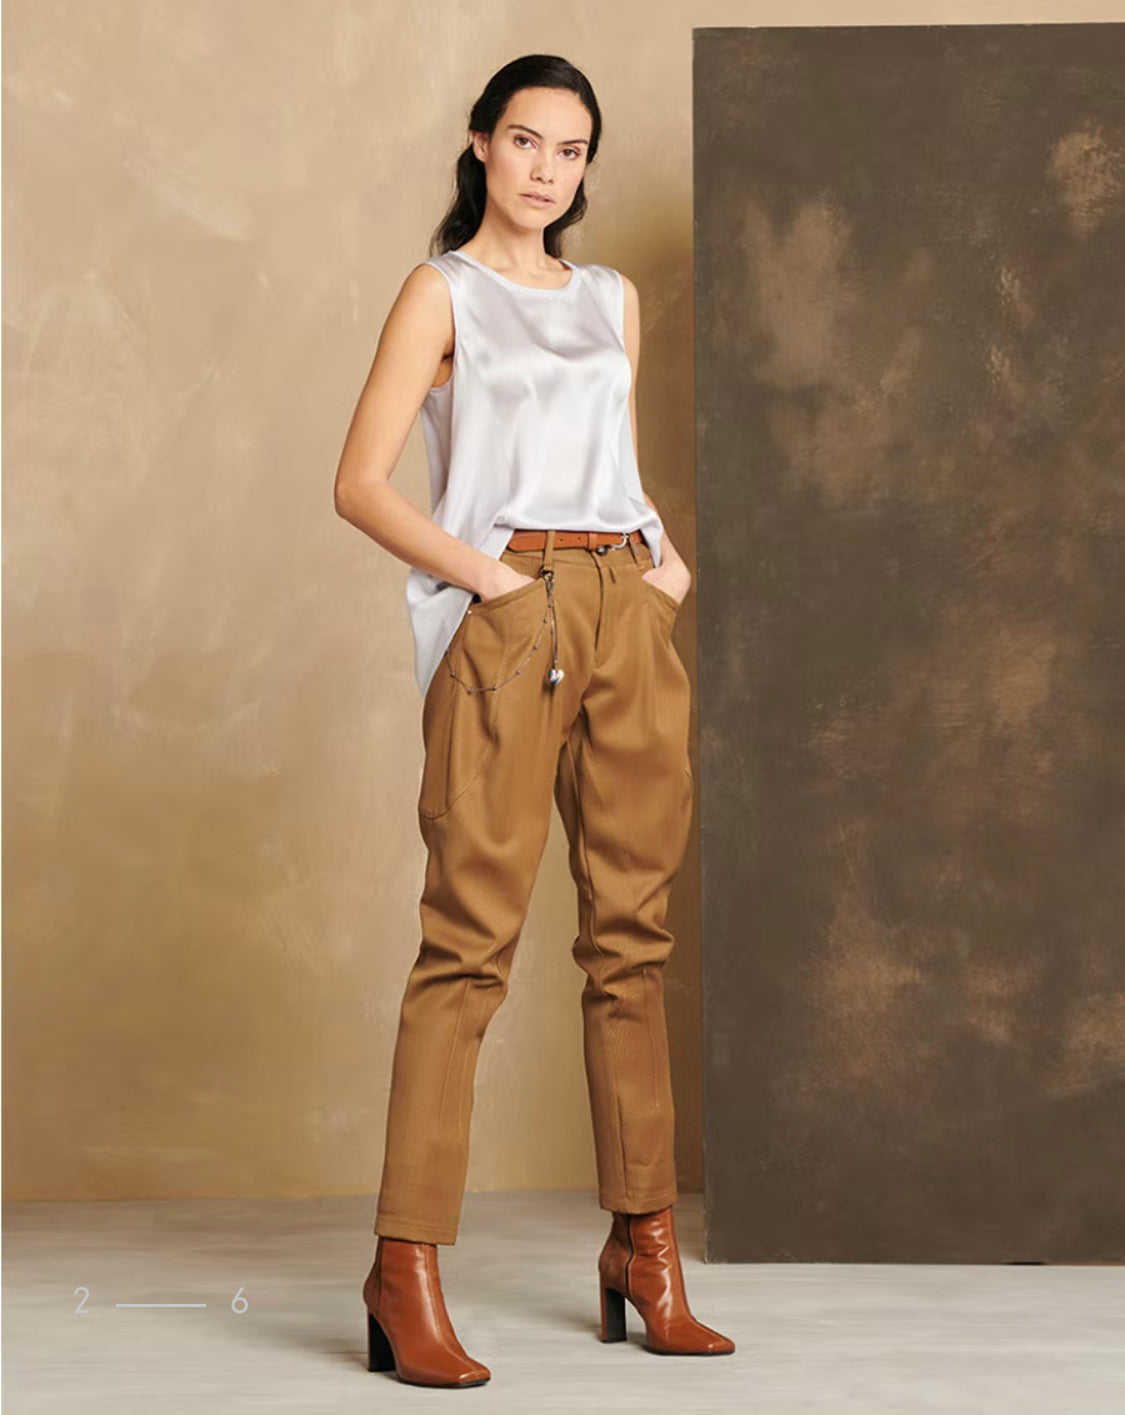 jodhpur pants - Recherche Google | Girls pants, Jodhpur pants, Fashion